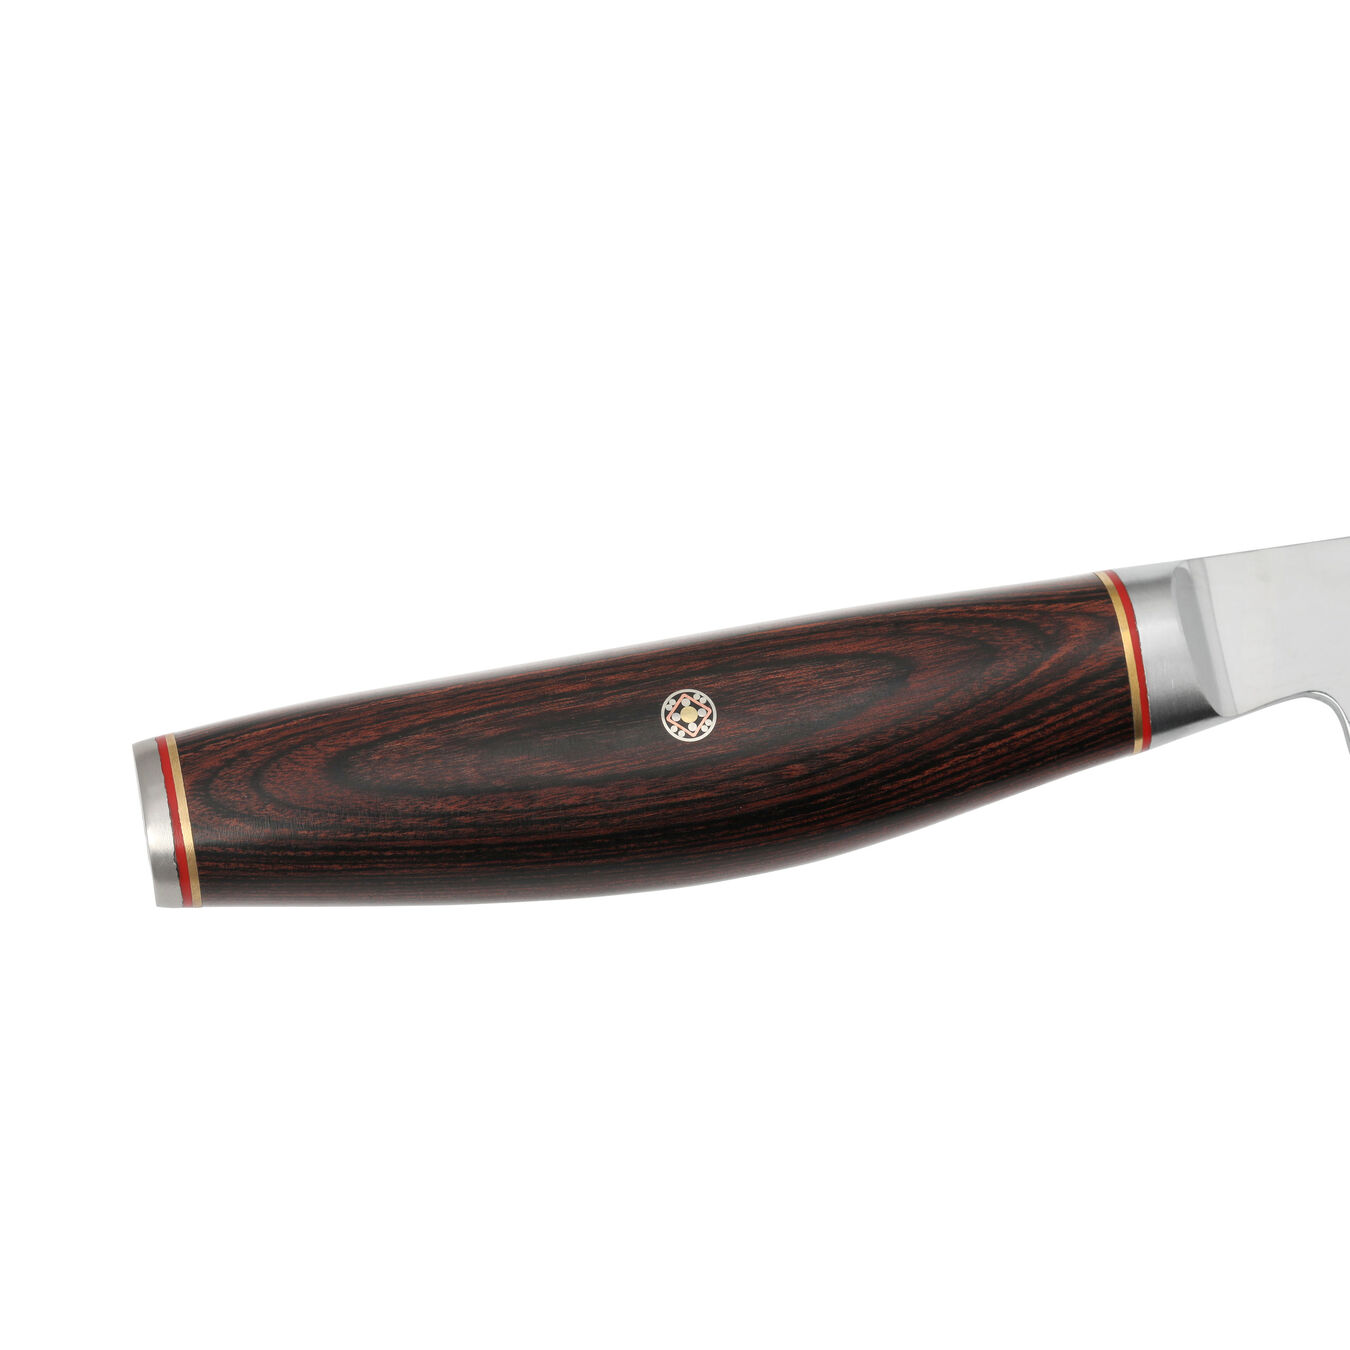 3.5-inch Pakka Wood Paring Knife,,large 6